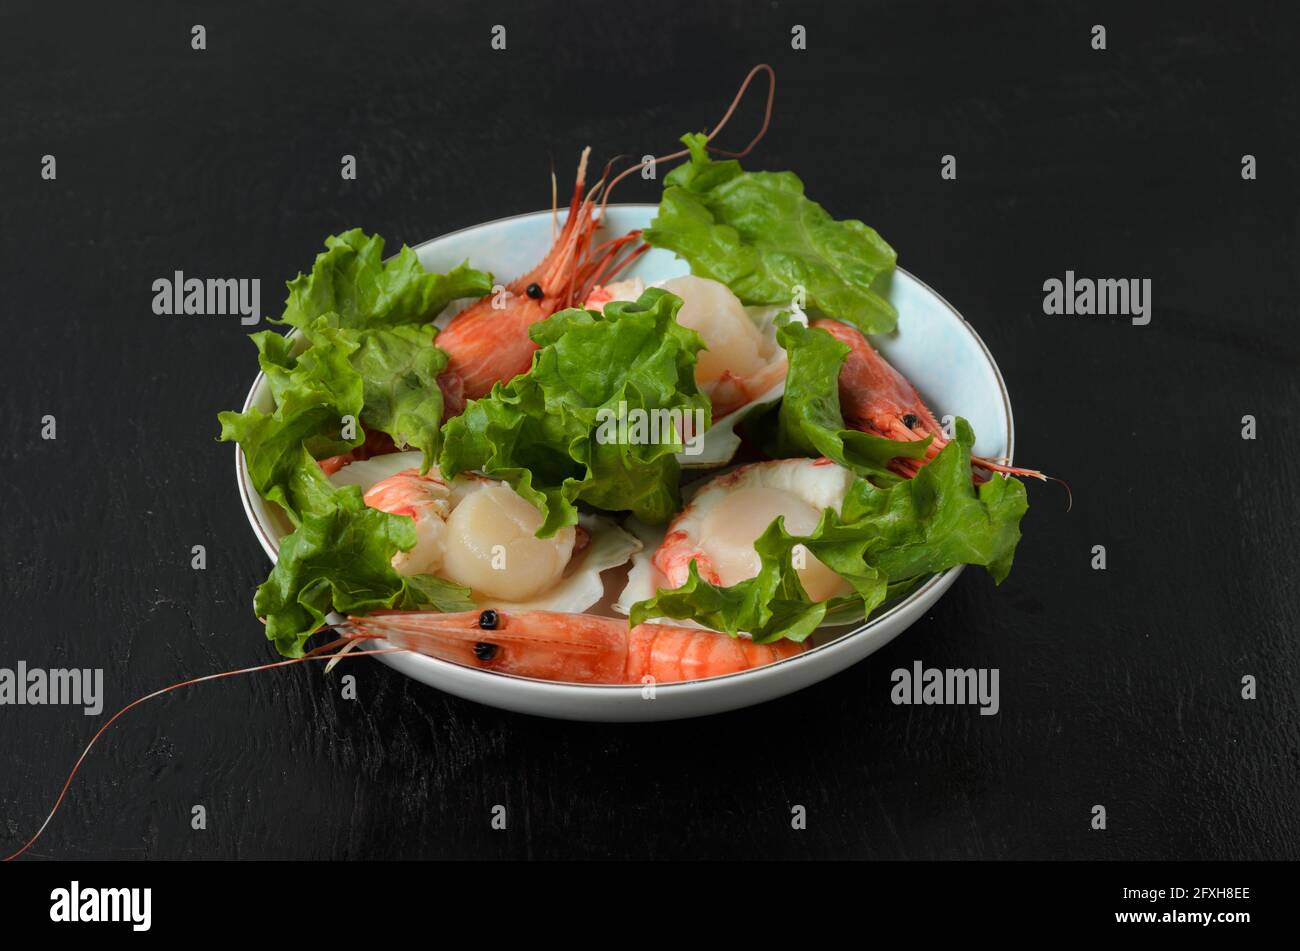 Vieiras crudas naturales con camarón hervido en el fregadero en un tazón de cerámica con hojas de lechuga sobre un fondo oscuro. Enfoque selectivo. Foto de stock